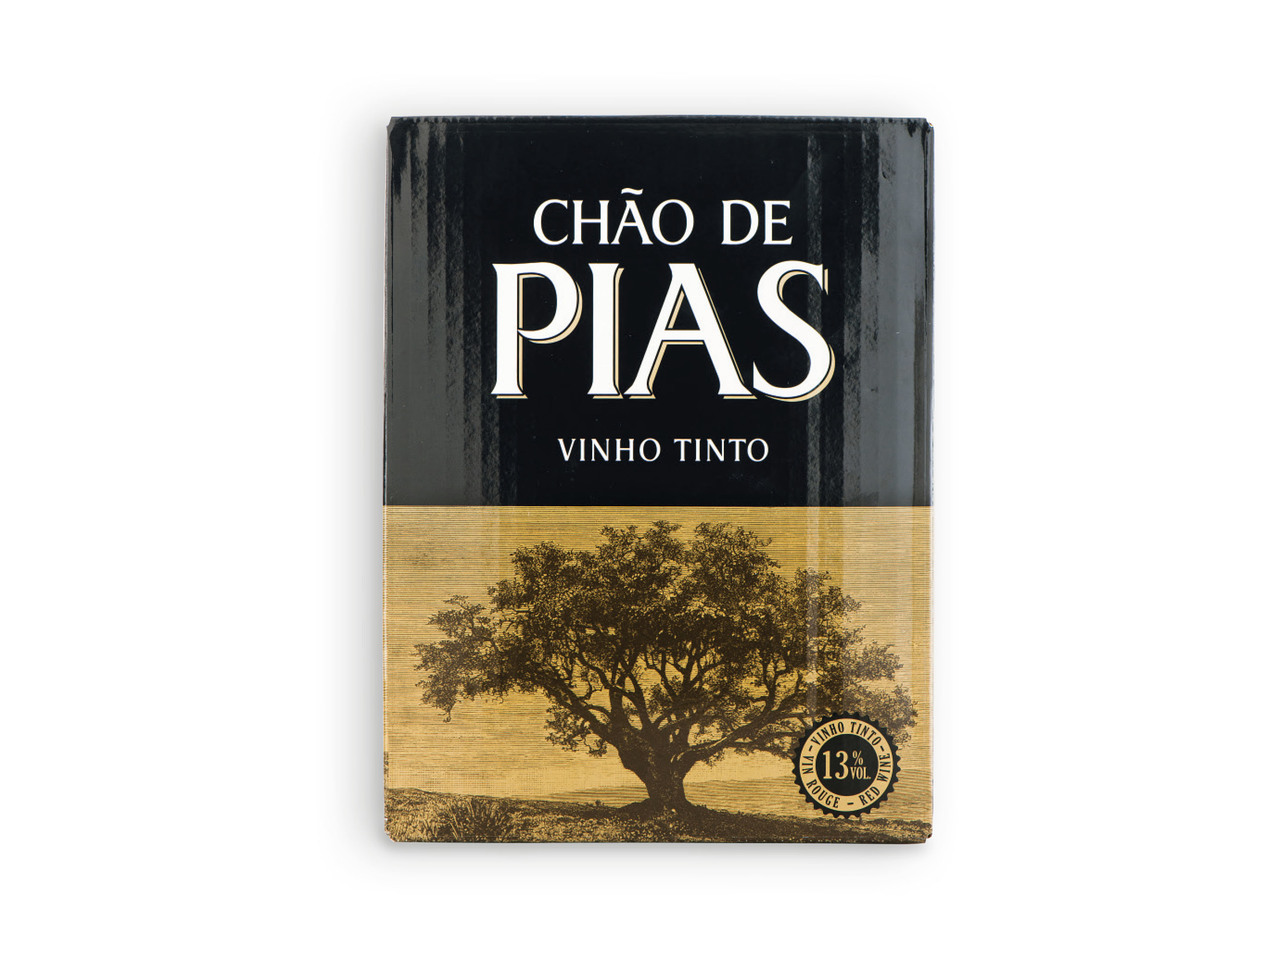 CHÃO DE PIAS(R) Vinho Tinto BIB